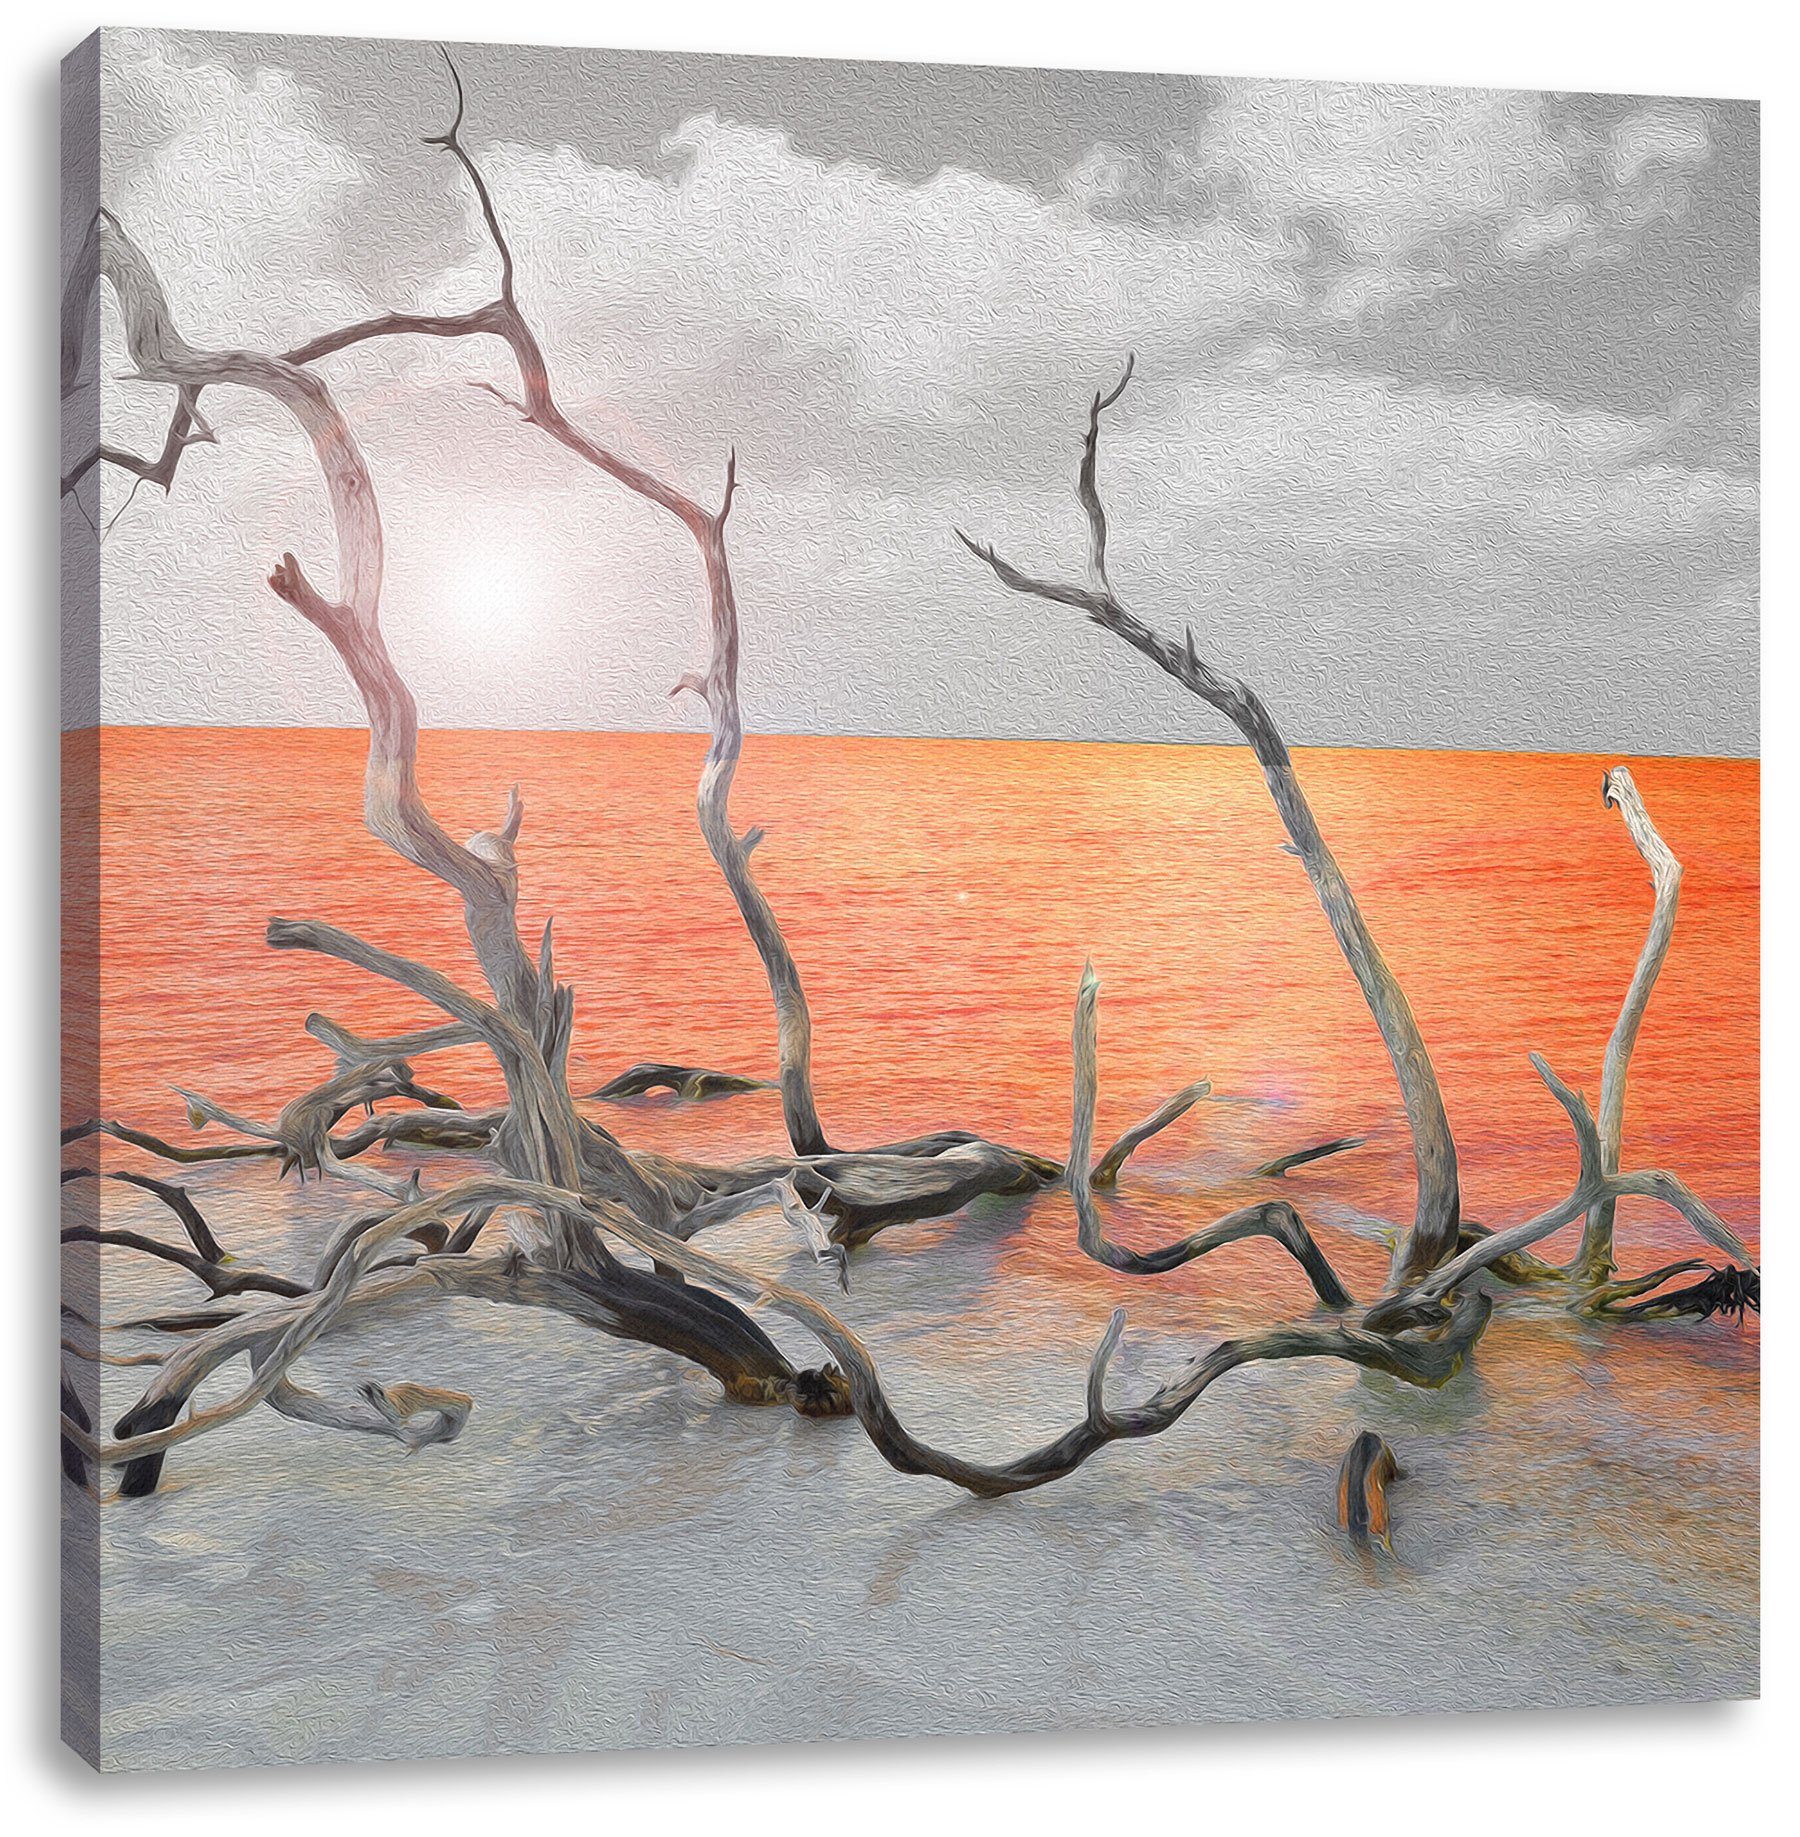 Pixxprint Leinwandbild Treibgut am Meer, Treibgut am Meer (1 St), Leinwandbild fertig bespannt, inkl. Zackenaufhänger